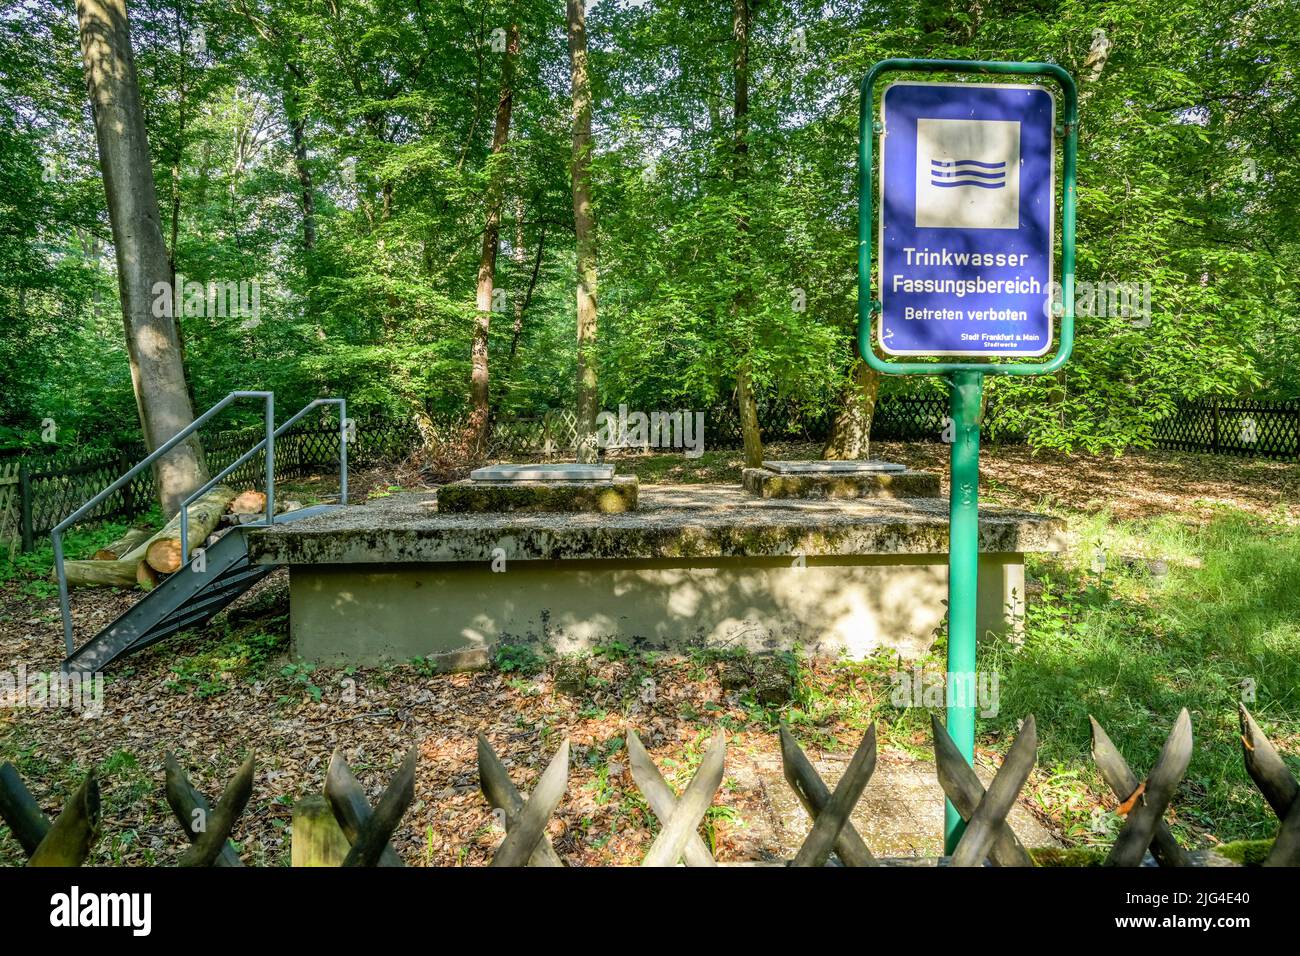 Trinkwasserbrunnen, Stadtwald, Frankfurt am Main, Hessen, Deutschland Stock Photo